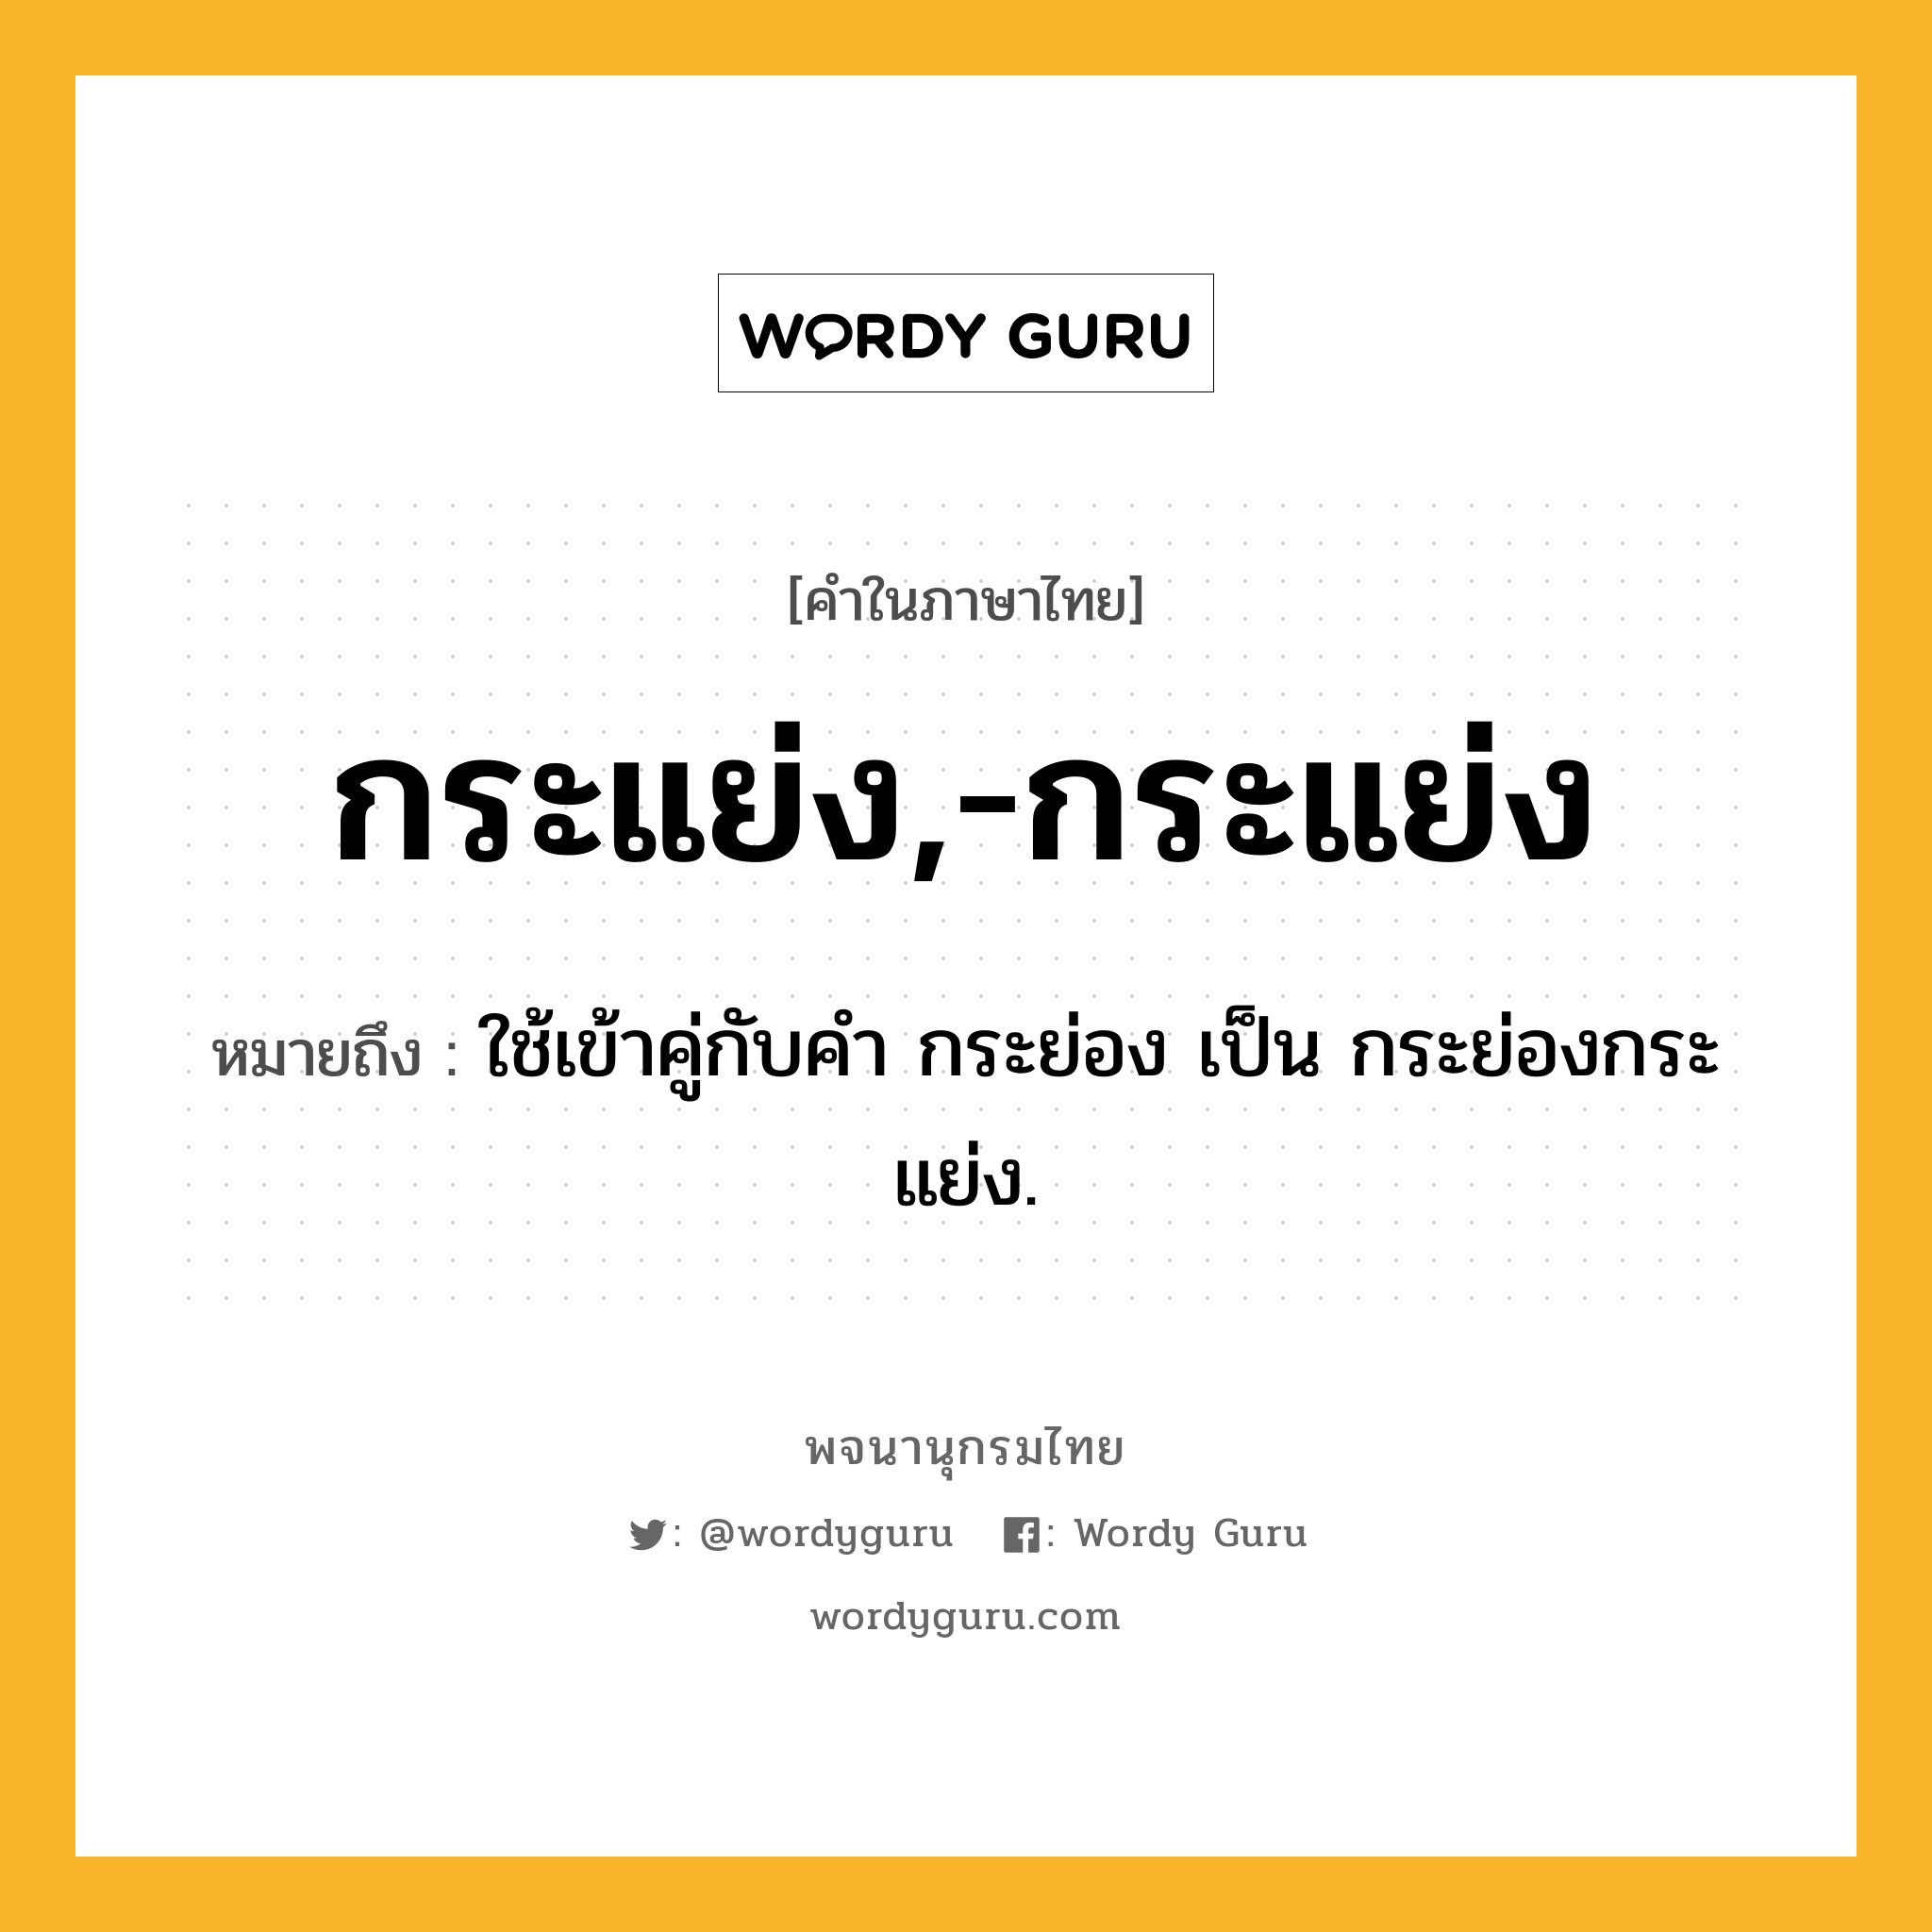 กระแย่ง,-กระแย่ง ความหมาย หมายถึงอะไร?, คำในภาษาไทย กระแย่ง,-กระแย่ง หมายถึง ใช้เข้าคู่กับคํา กระย่อง เป็น กระย่องกระแย่ง.